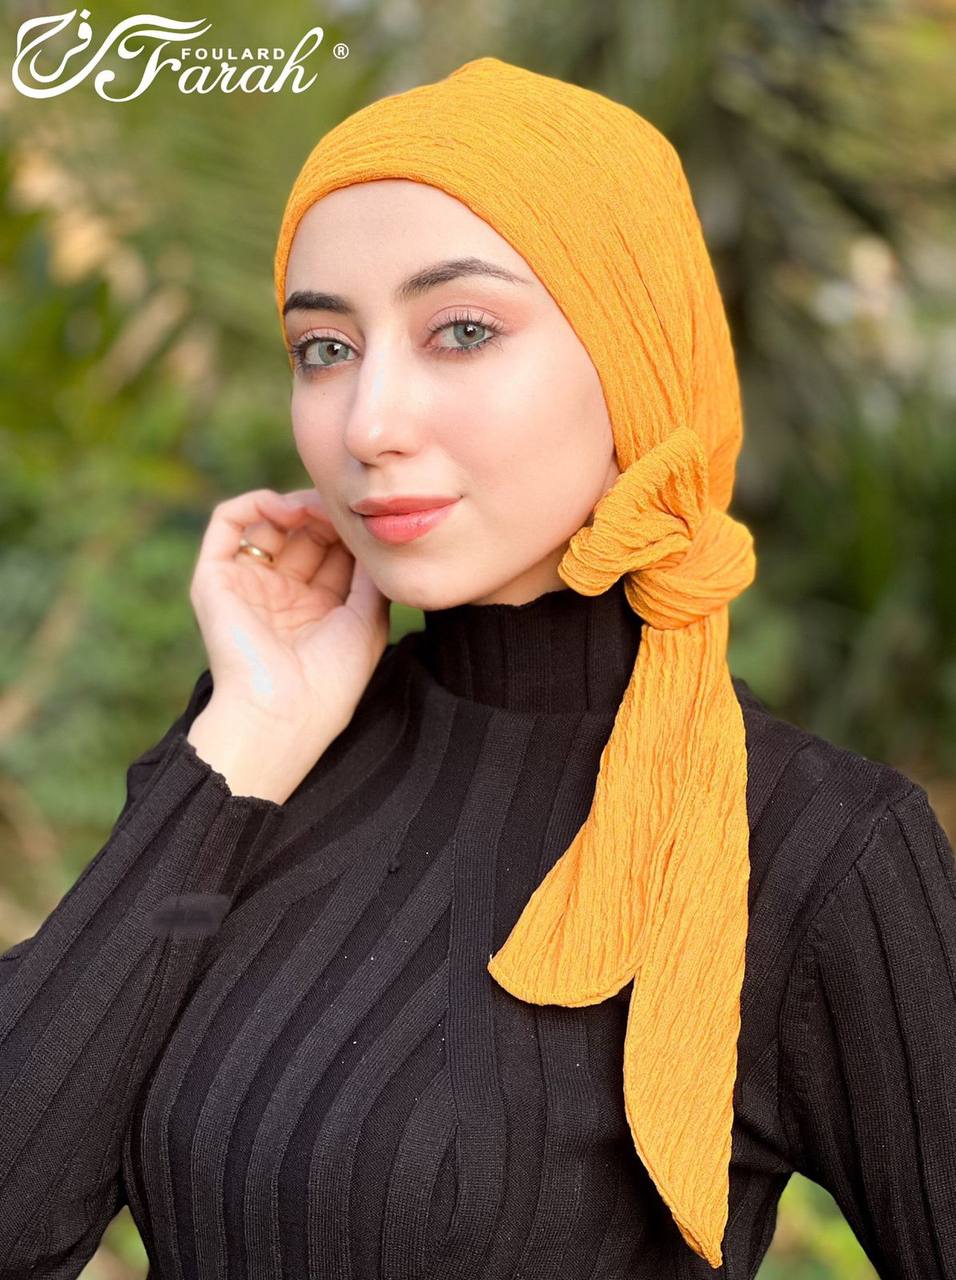 Elegant Pleated Turban Hijab - Stylish Headwrap for Modest Fashion - Mustard